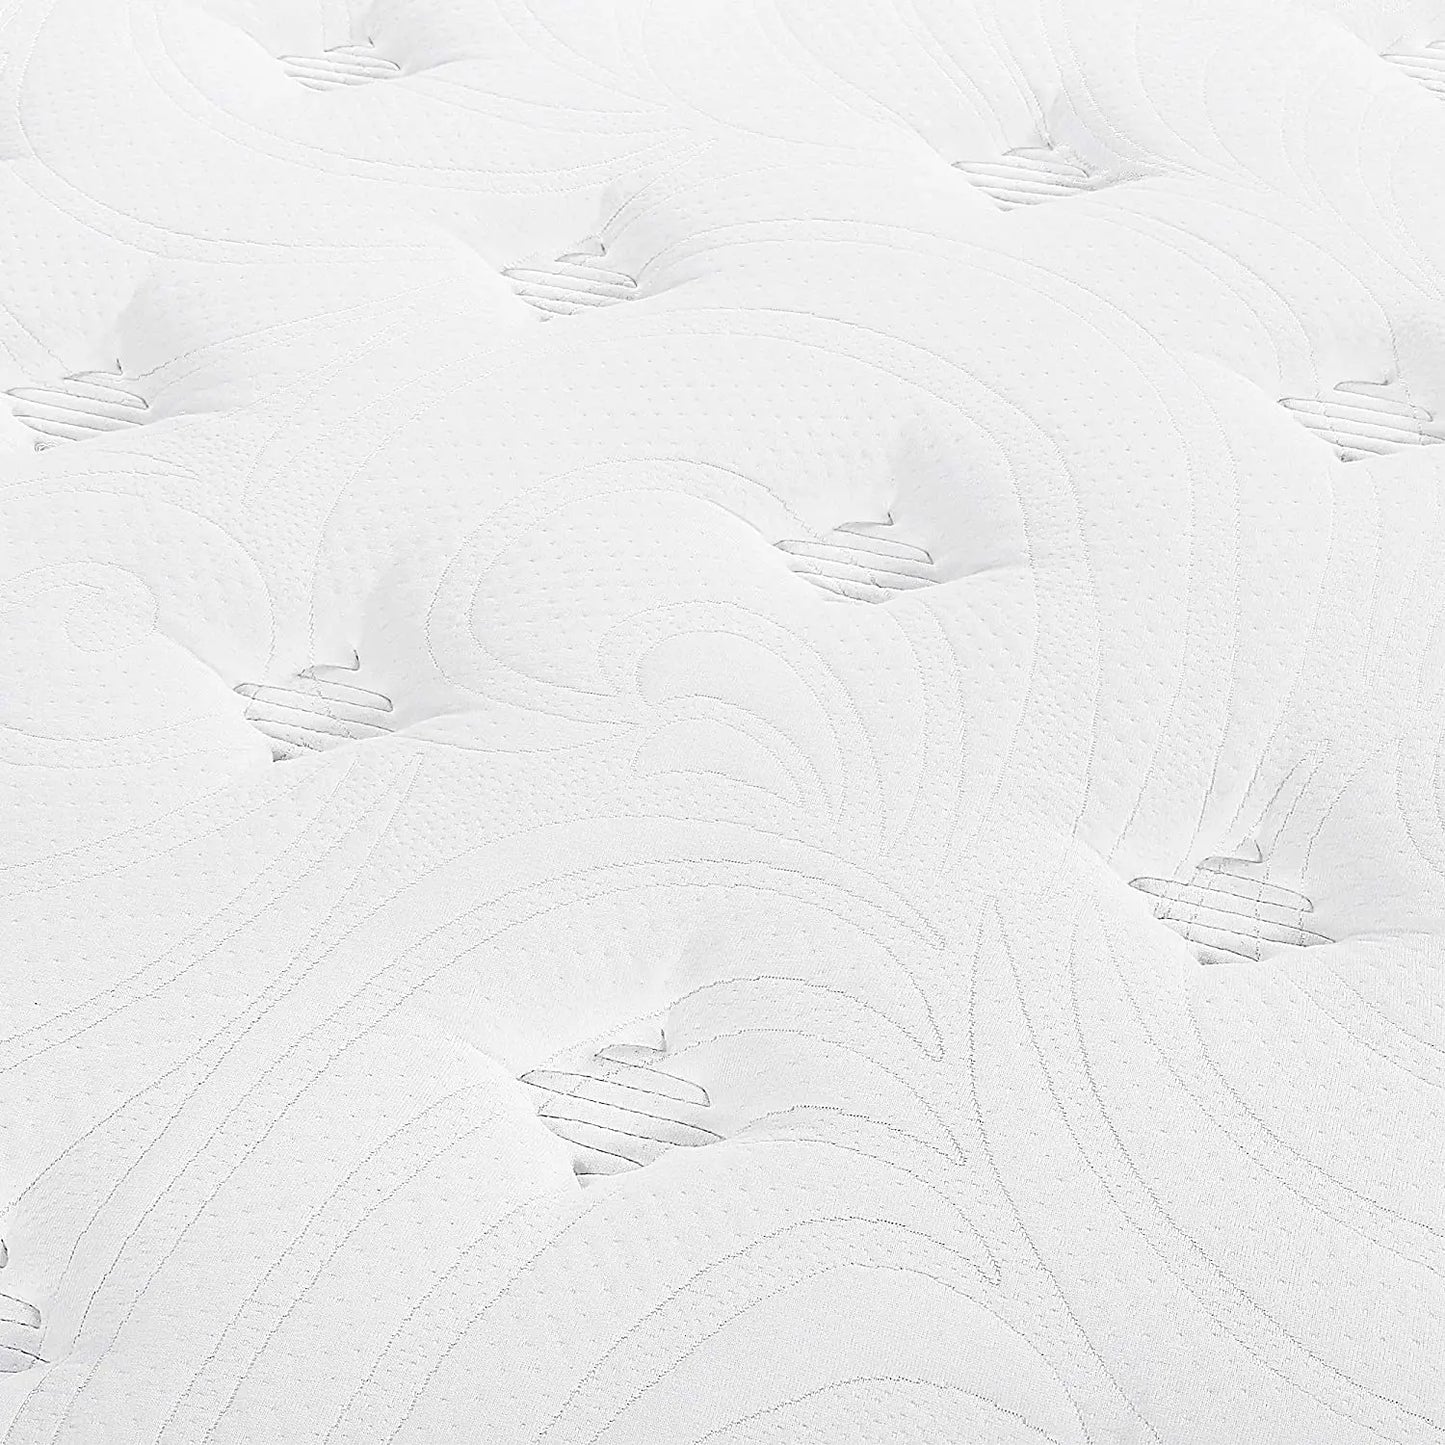 Wholesale mute high density mattress king size   foam organic export velvet latex mattress